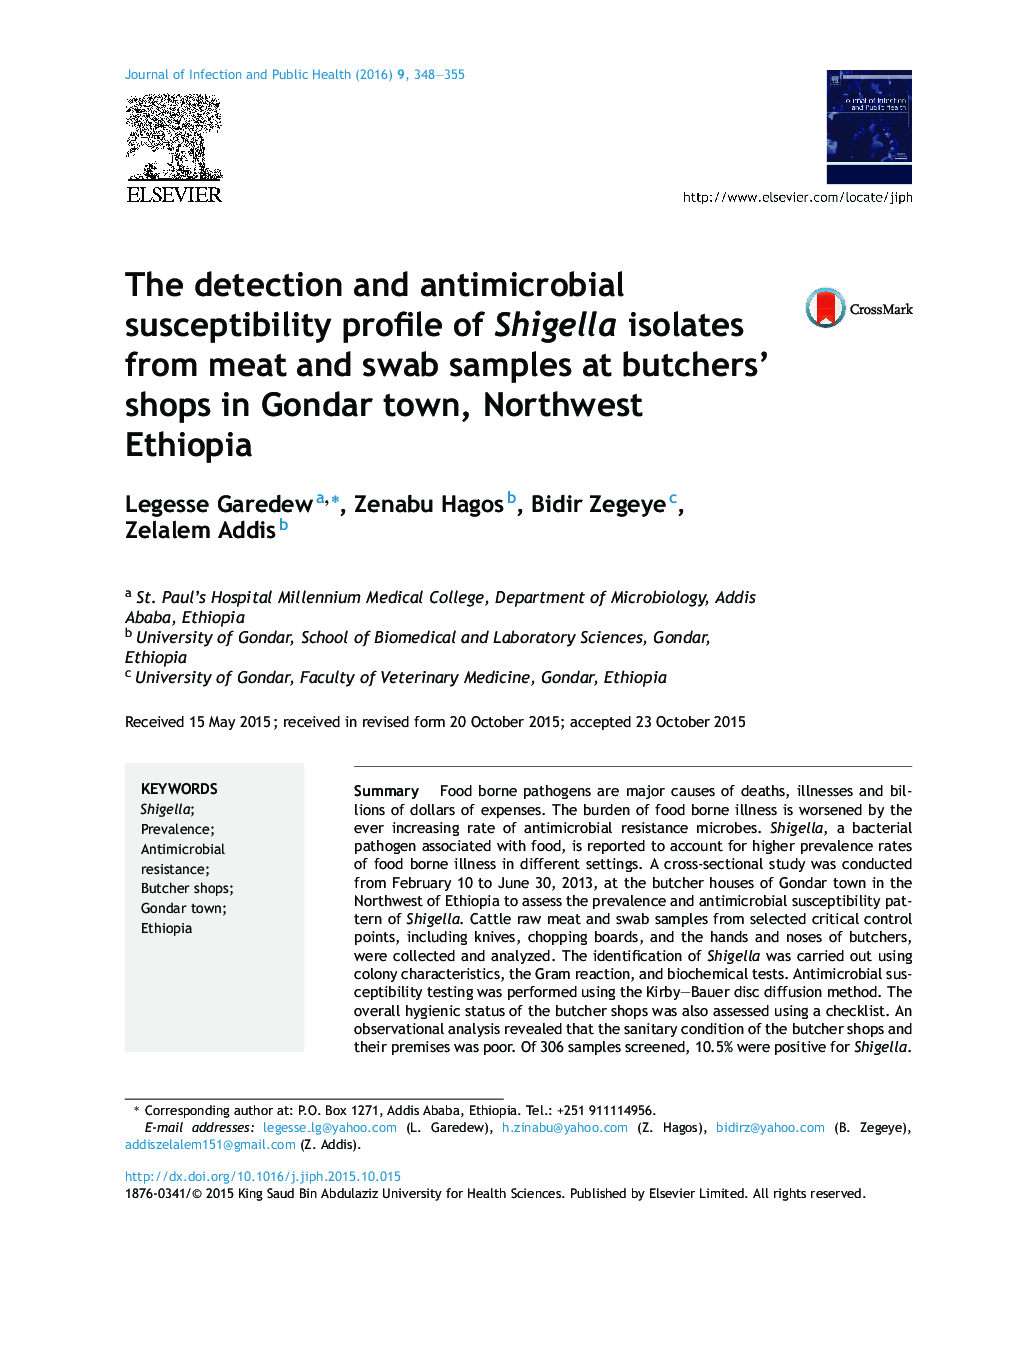 تشخیص و حساسیت ضدمیکروبی مشخصات باکتری شیگلا جدا شده از نمونه های گوشت و سواب در مغازه‌های قصابی در شهر گوندر، شمال غربی اتیوپی